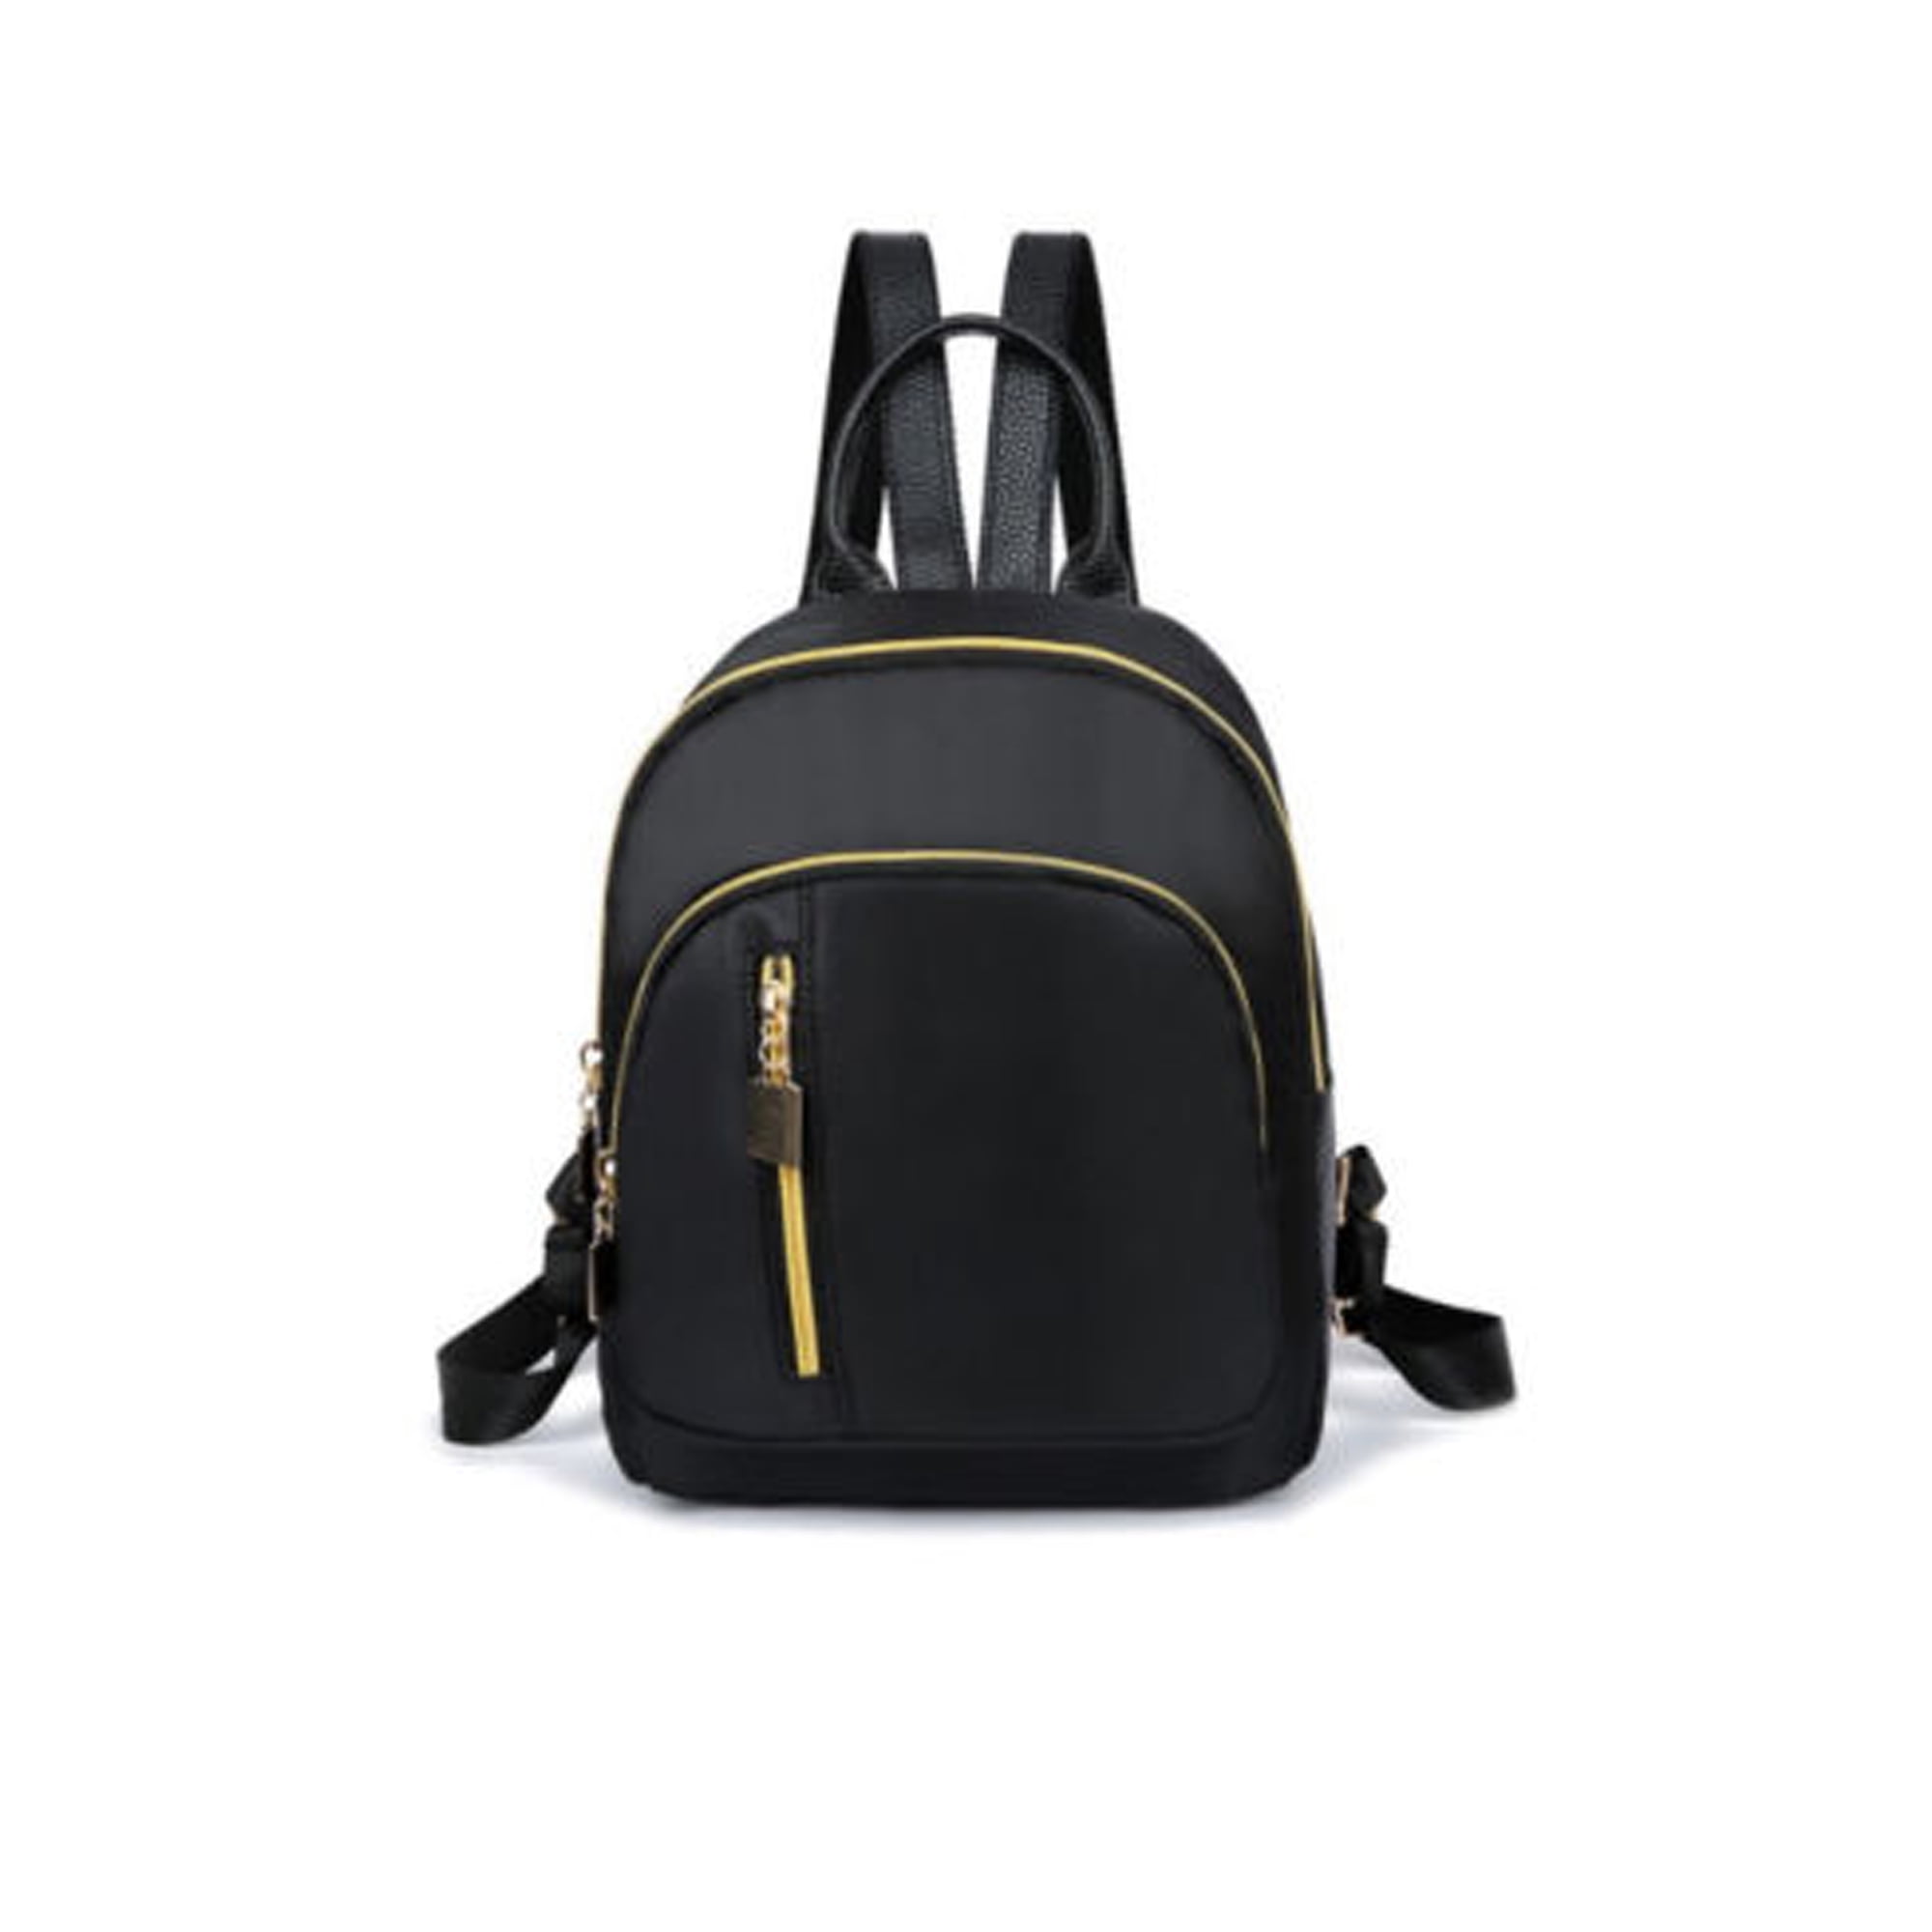 Details about   Outdoor 1000D Nylon Mini Backpack Storage Bag Cute Girls Kids Shoulder Bag 